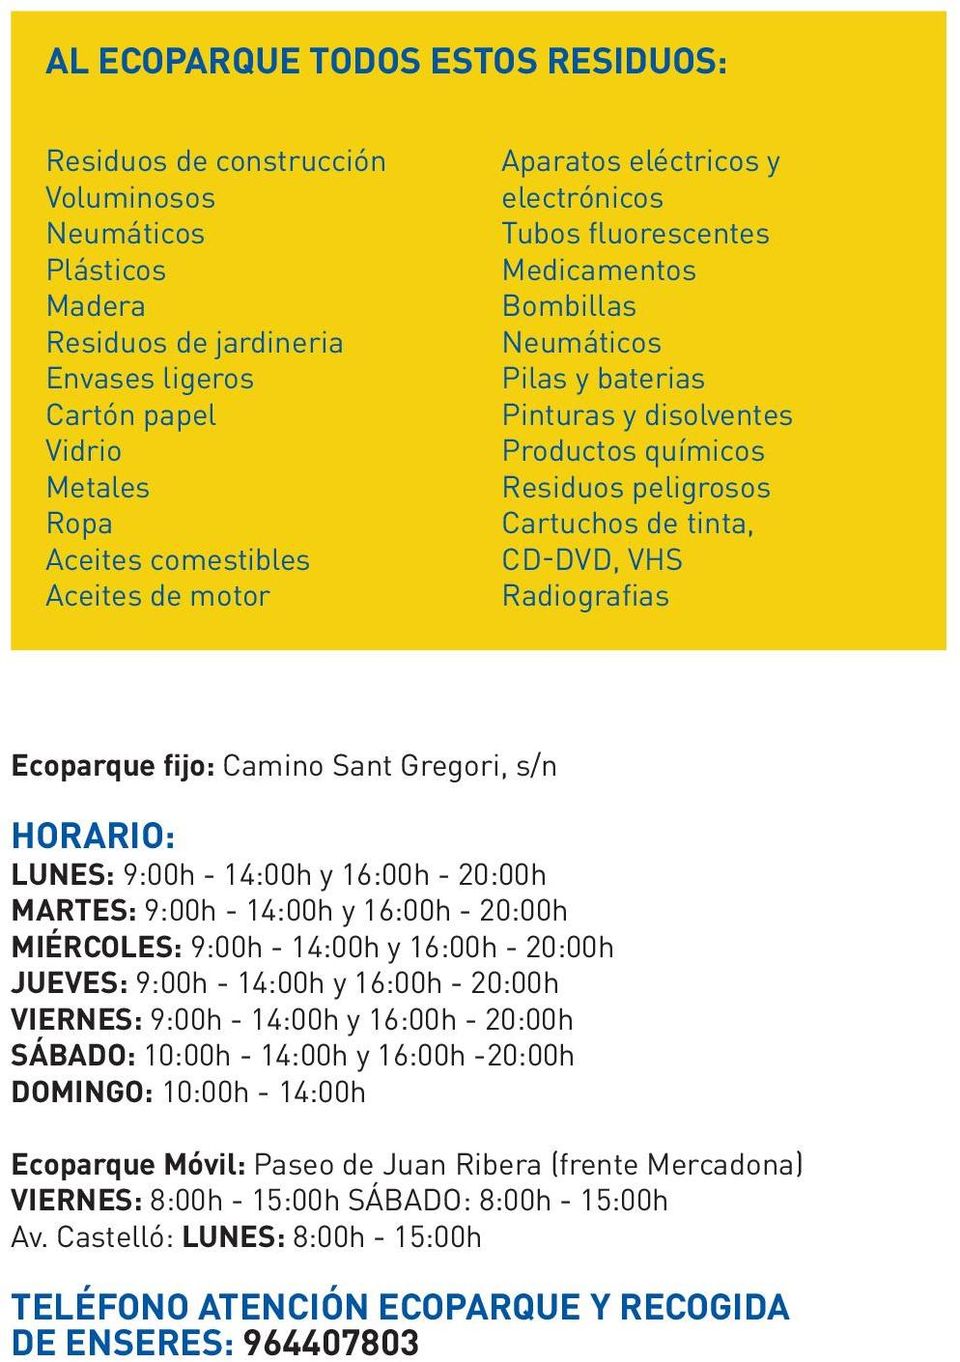 CD-DVD, VHS Radiografias Ecoparque fijo: Camino Sant Gregori, s/n HORARIO: LUNES: 9:00h - 14:00h y 16:00h - 20:00h MARTES: 9:00h - 14:00h y 16:00h - 20:00h MIÉRCOLES: 9:00h - 14:00h y 16:00h - 20:00h